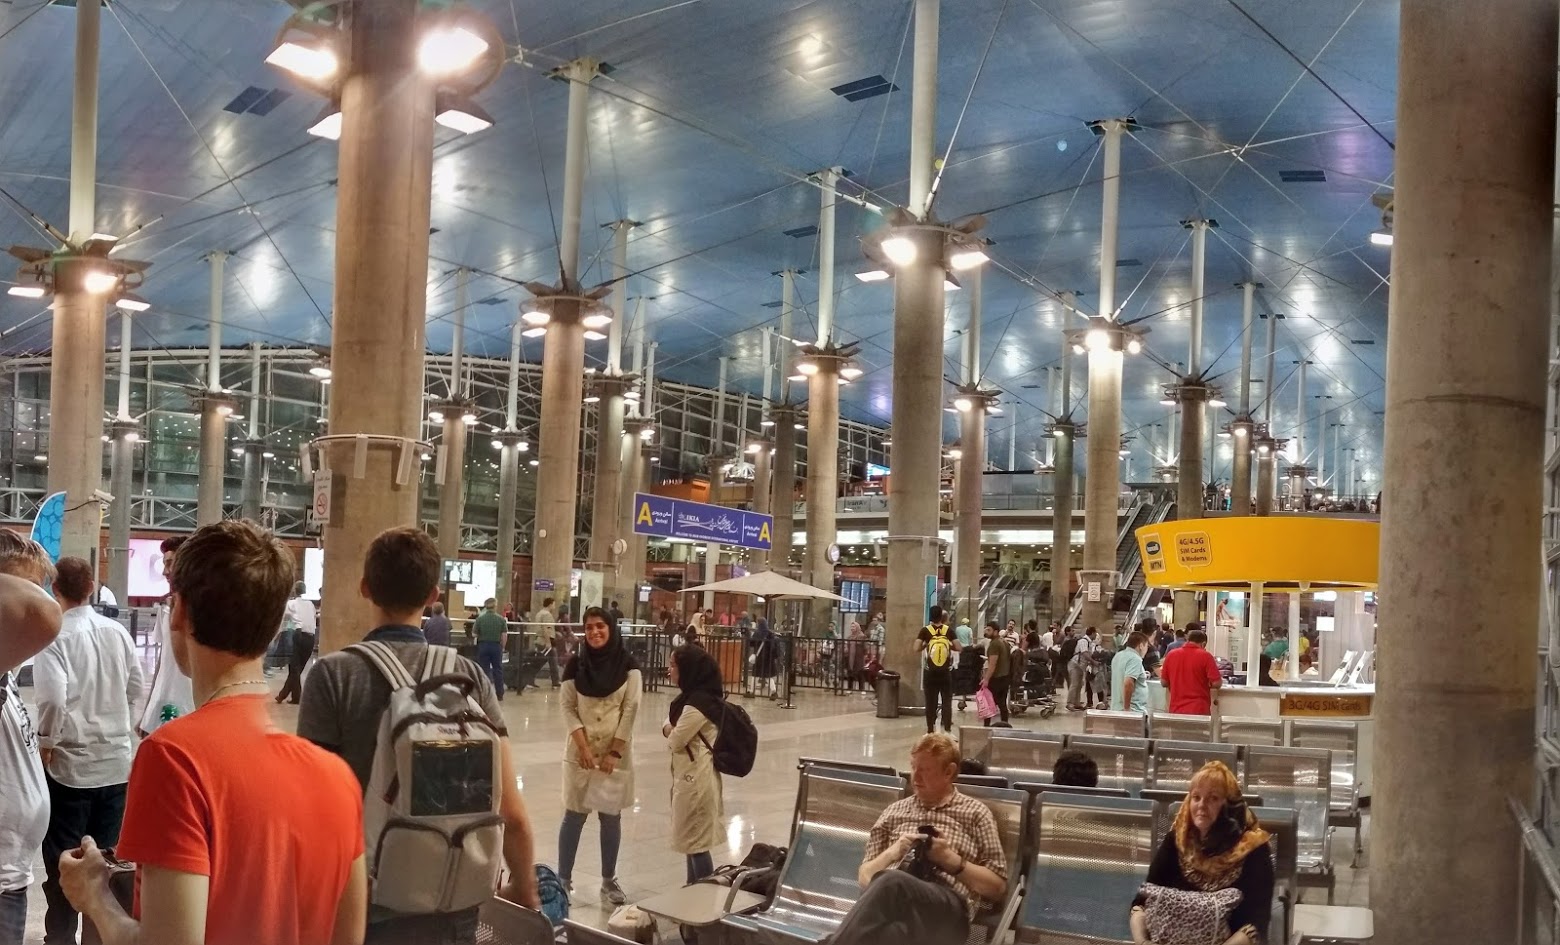 Аэропорт тегеран имам хомейни фото